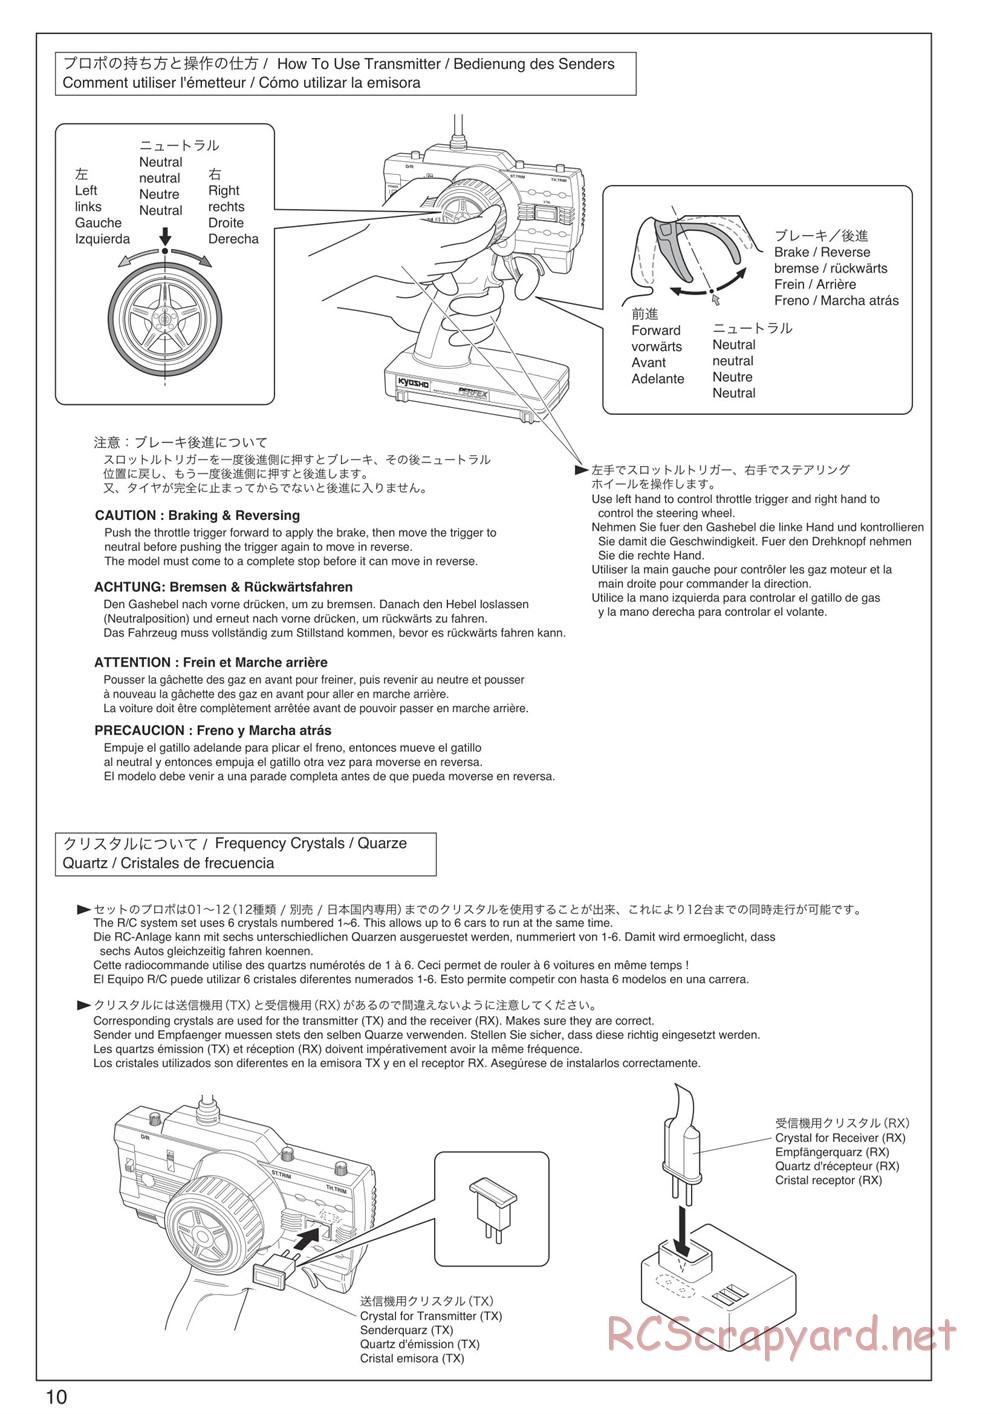 Kyosho - DBX-VE - Manual - Page 10